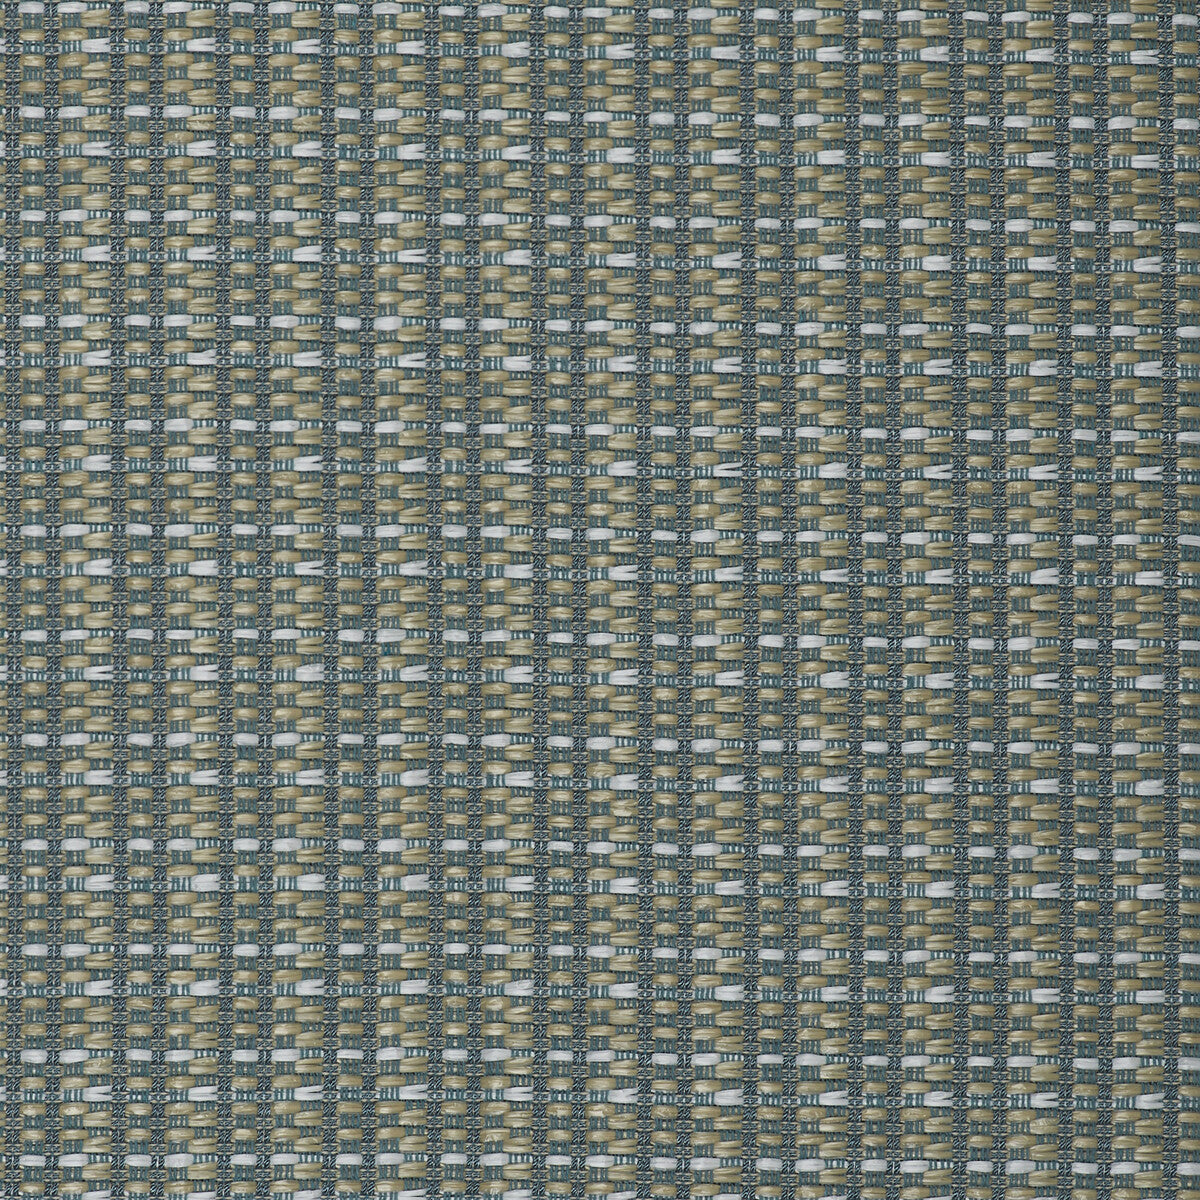 Mauregato fabric in agua color - pattern LCT1002.002.0 - by Gaston y Daniela in the Lorenzo Castillo V collection